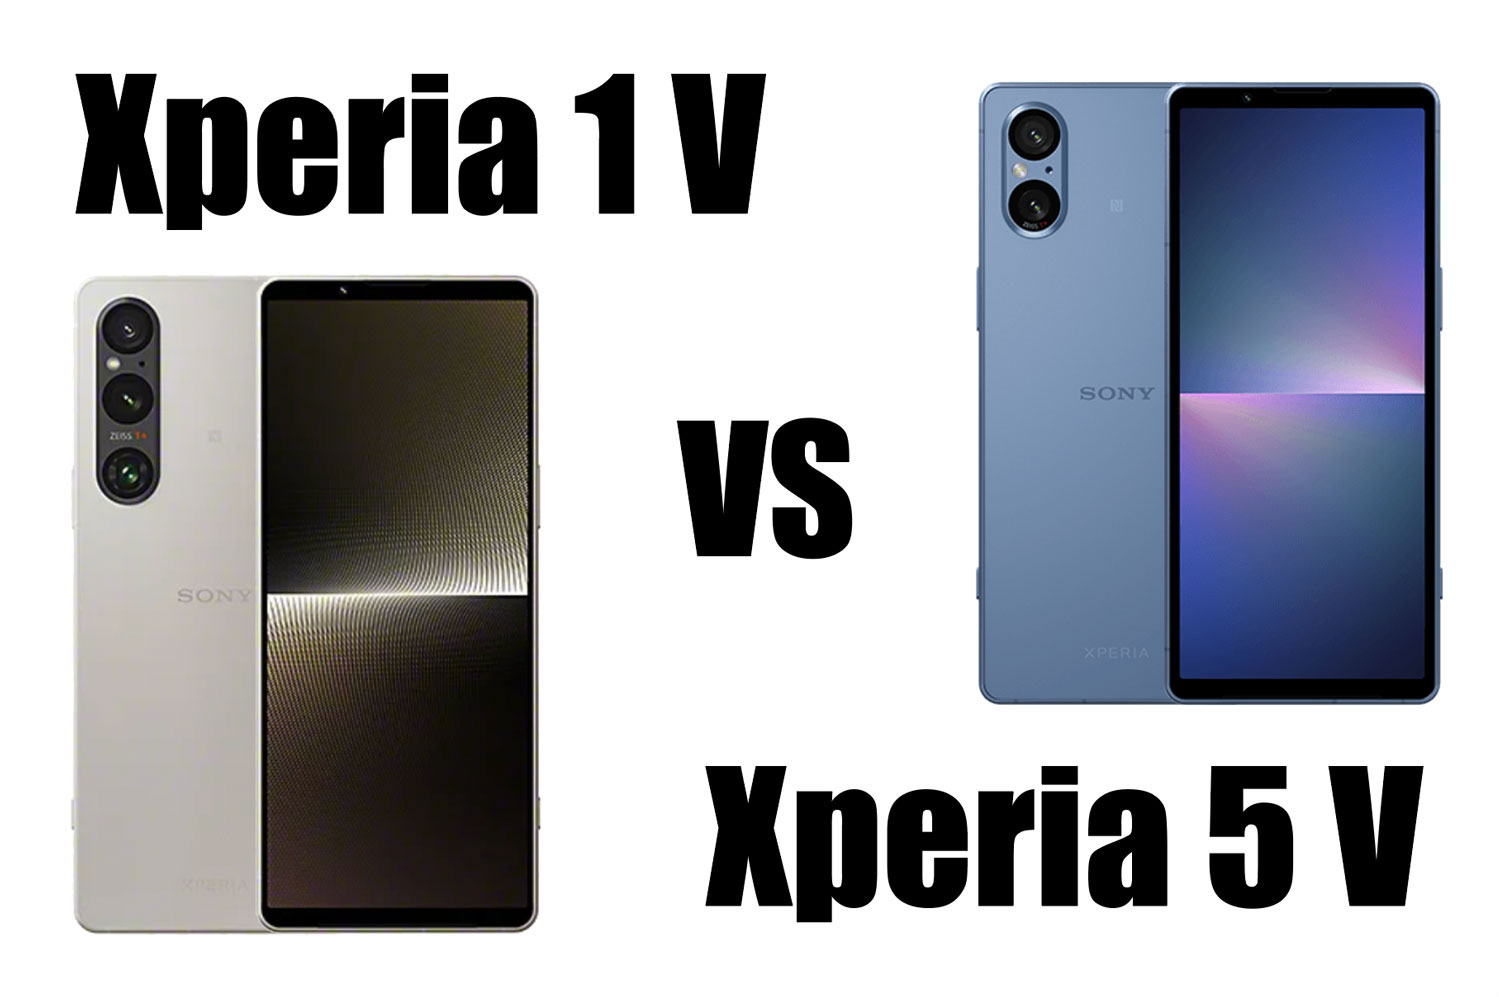 Xperia 1 V vs Xperia 5 V